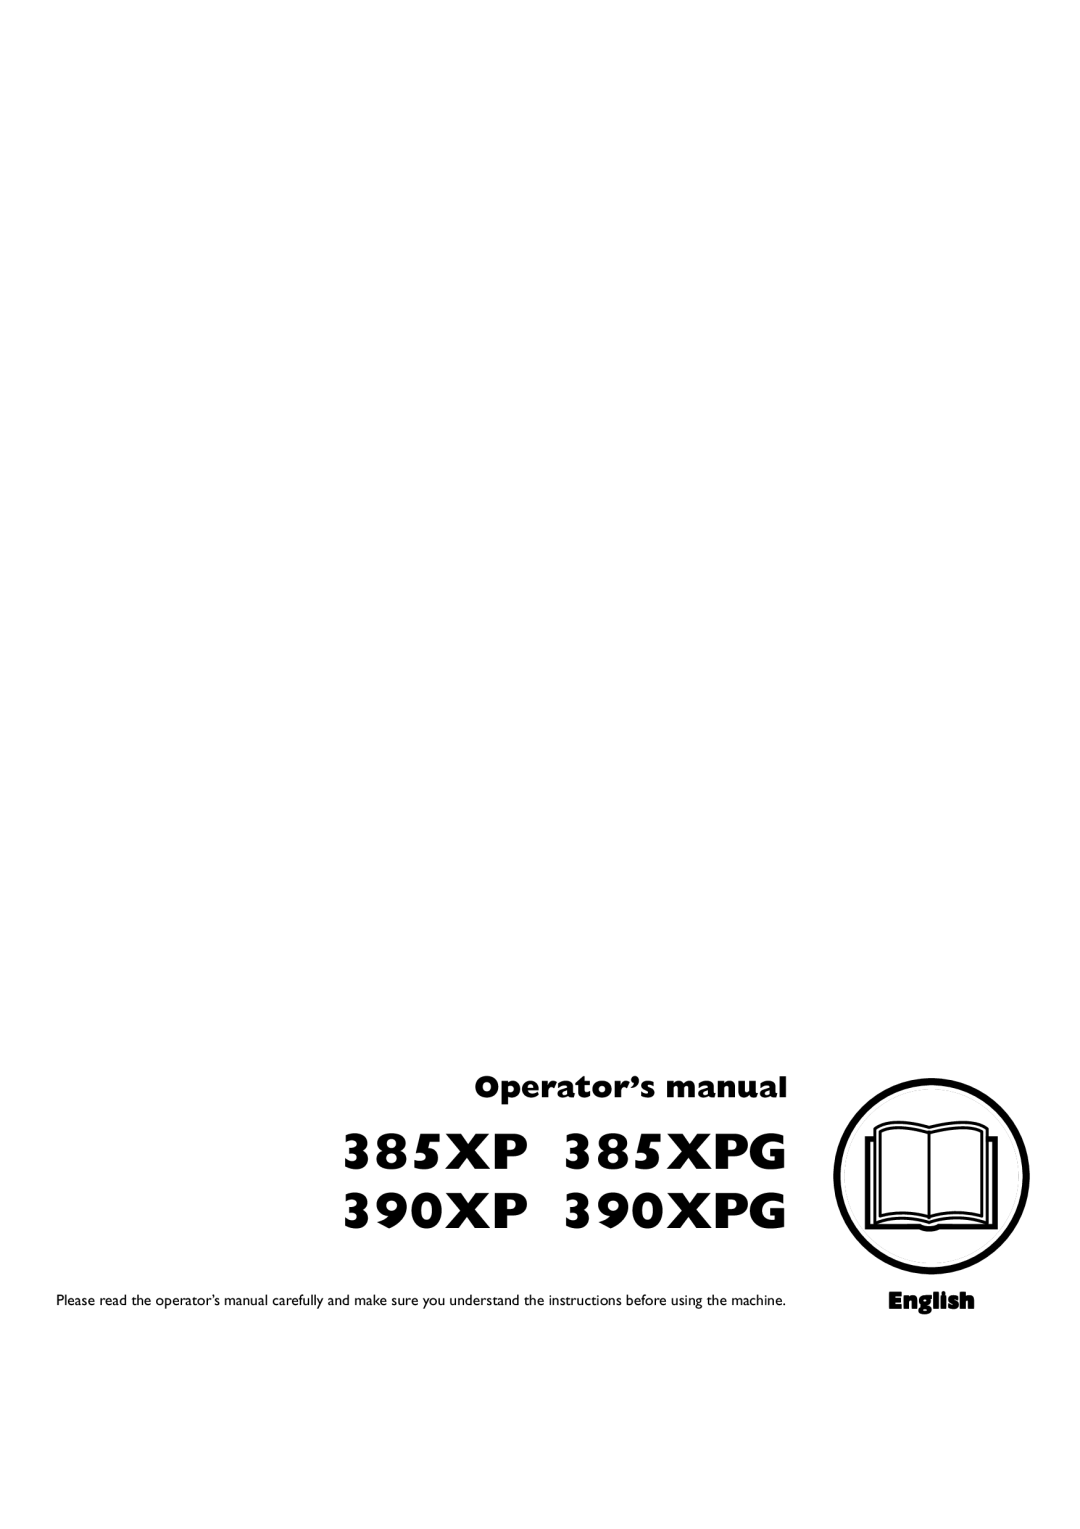 Husqvarna 1153176-95 manual 385XP 385XPG 390XP 390XPG, Operator’s manual, English 